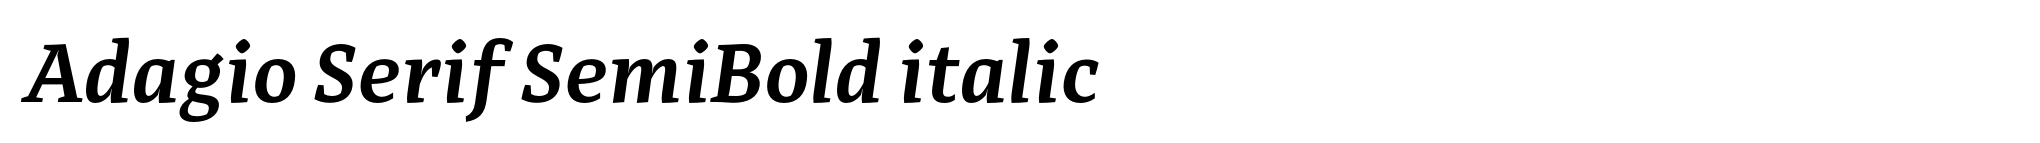 Adagio Serif SemiBold italic image